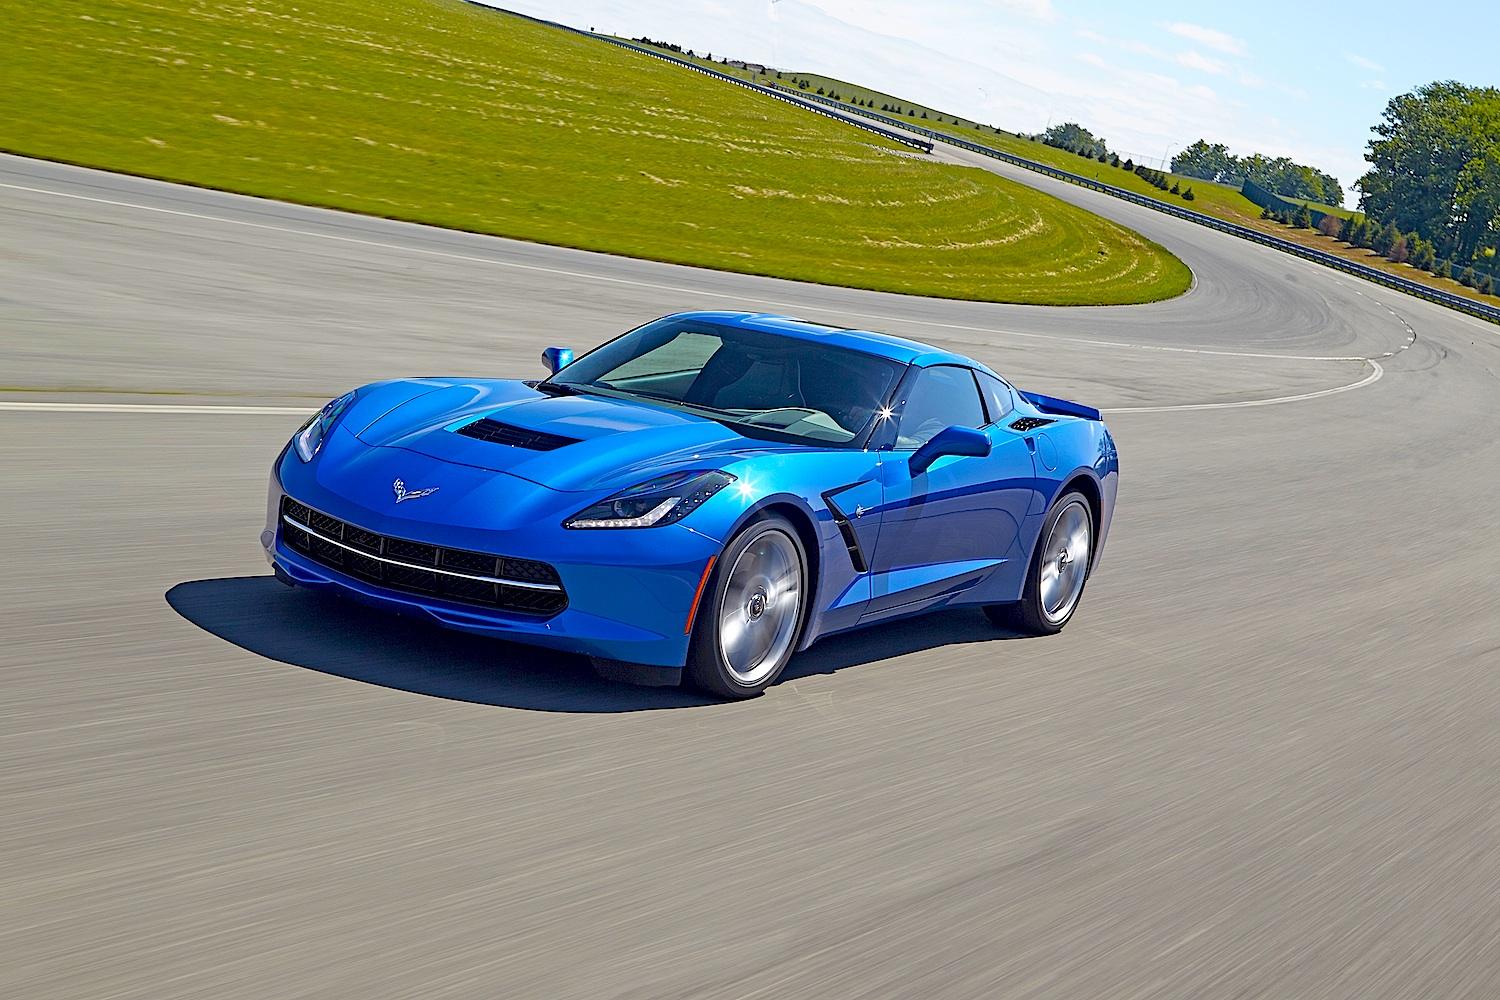 Chevrolet-Corvette-Stingray-on-track-blue